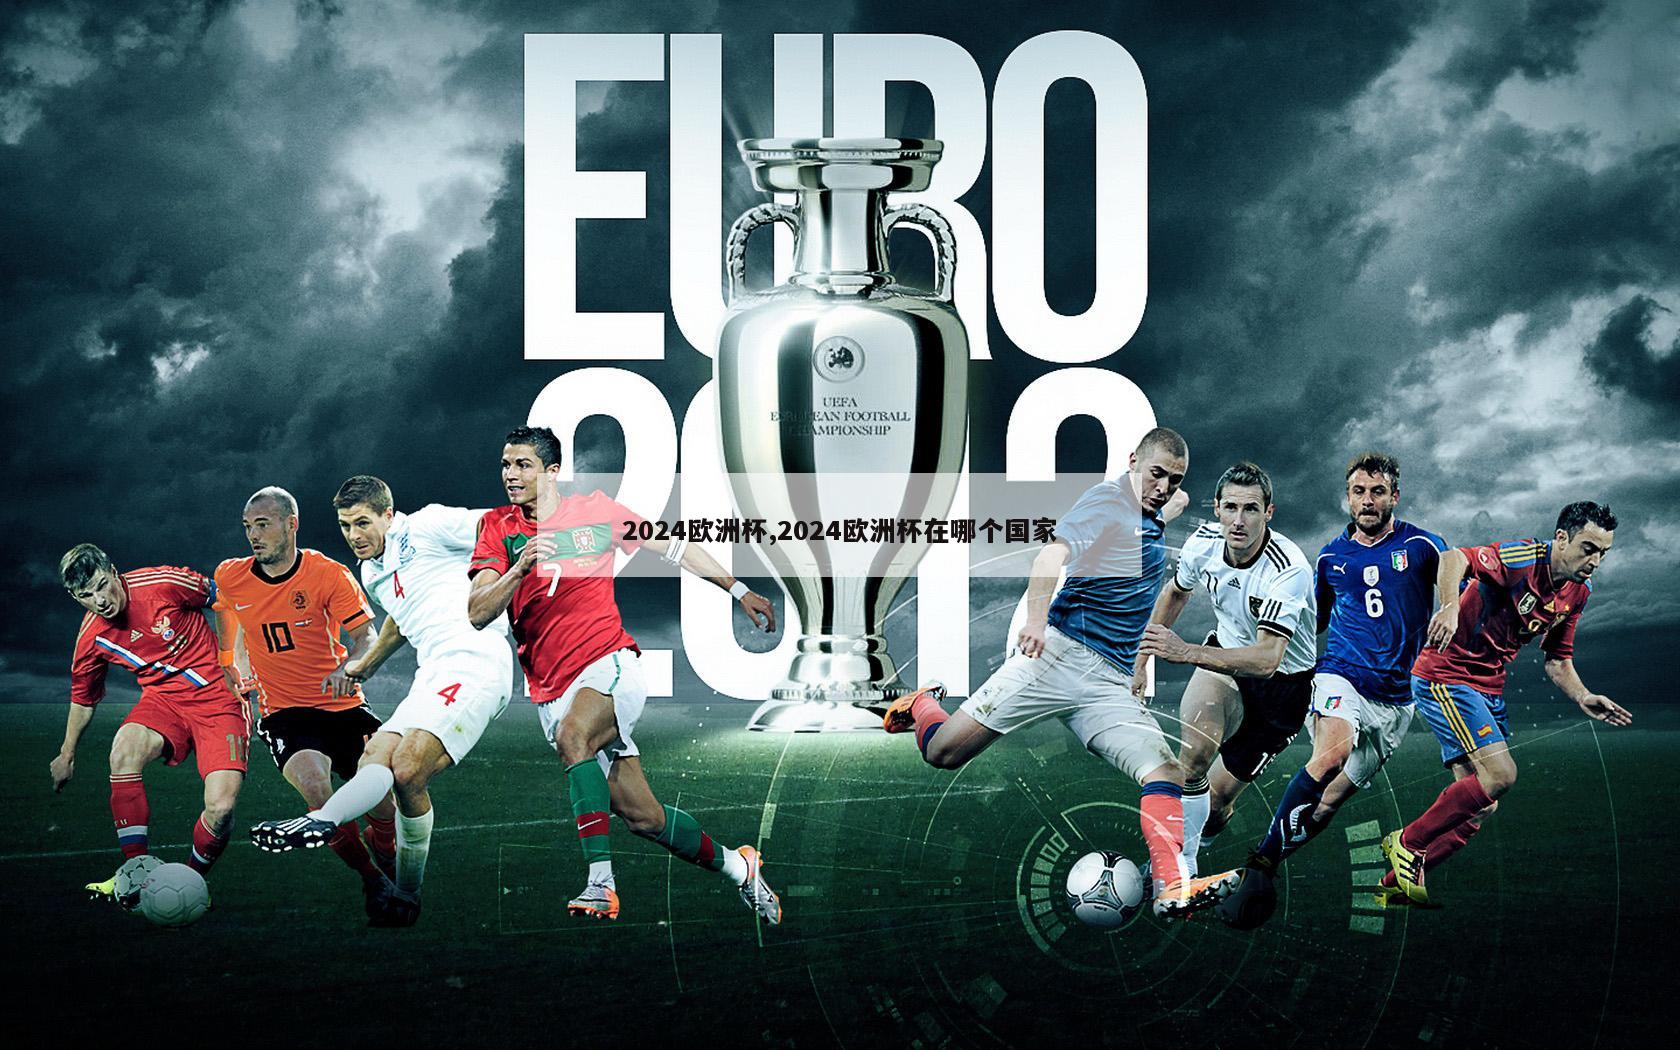 2024欧洲杯,2024欧洲杯在哪个国家